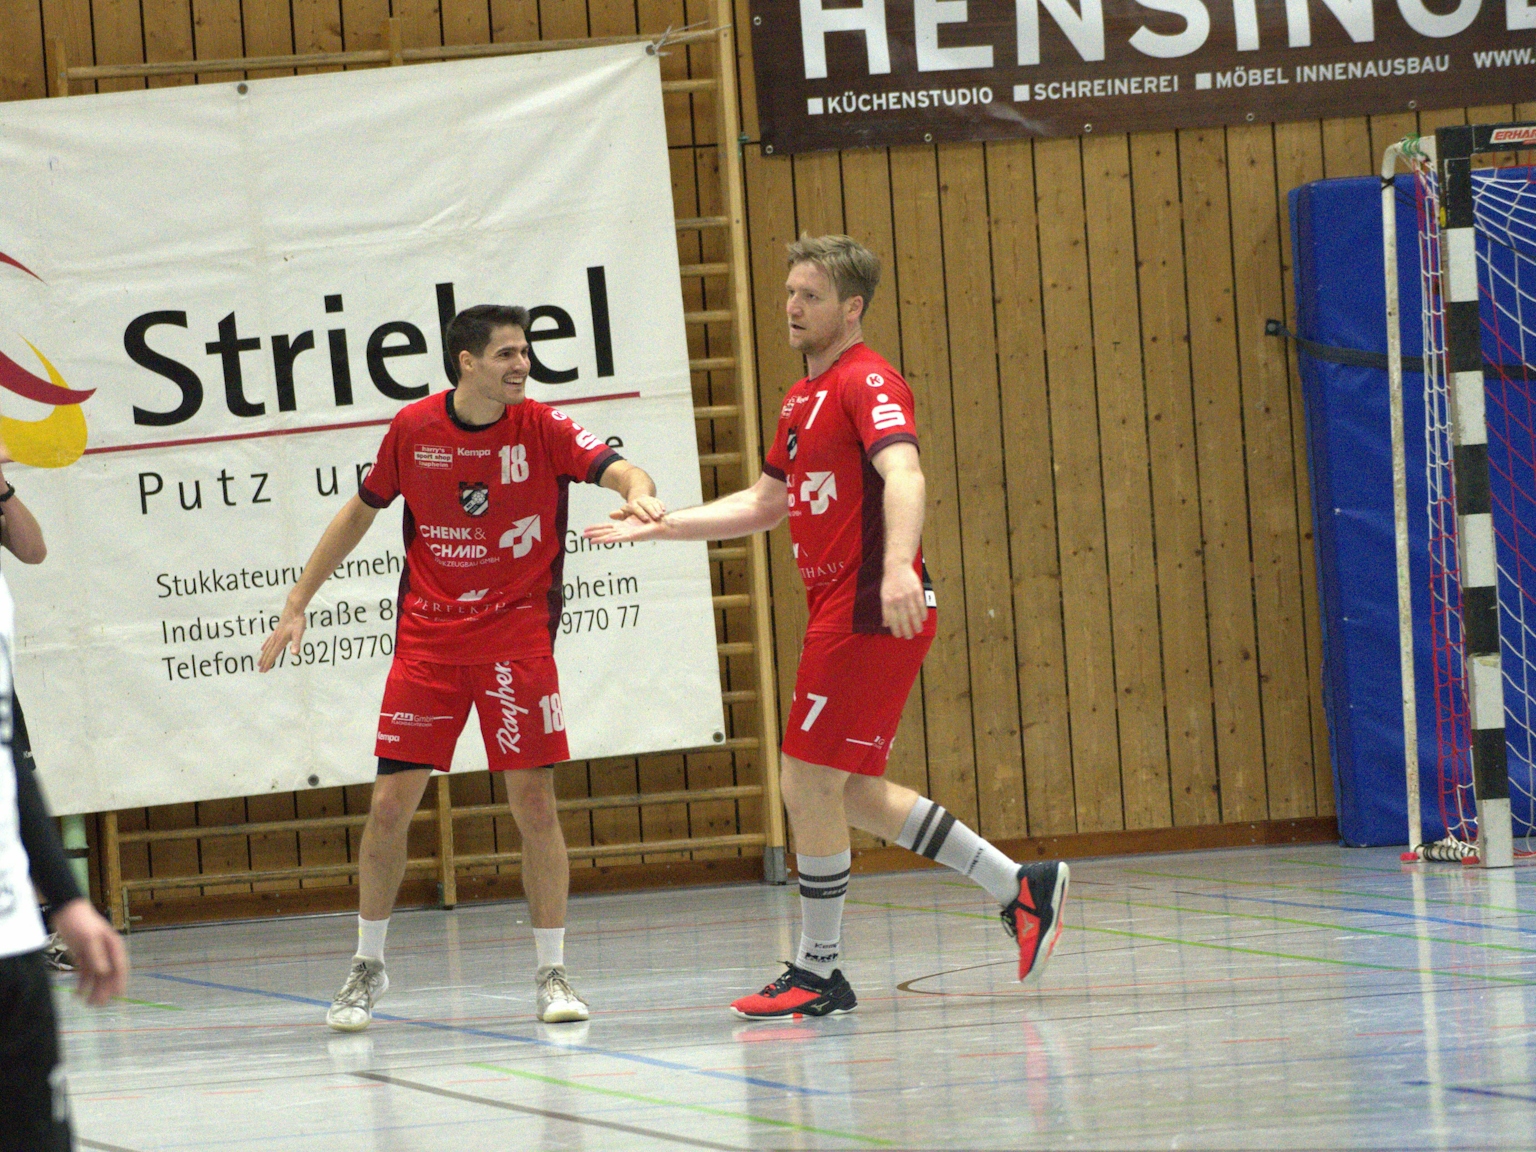 Zwei Handballspieler des HRW klatschen sich freudig in einer Turnhalle ab. Im Hintergrund sind ein Torpfosten und Sponsorenplakate zu sehen. Auf der linken Seite ist eine Person angeschnitten.